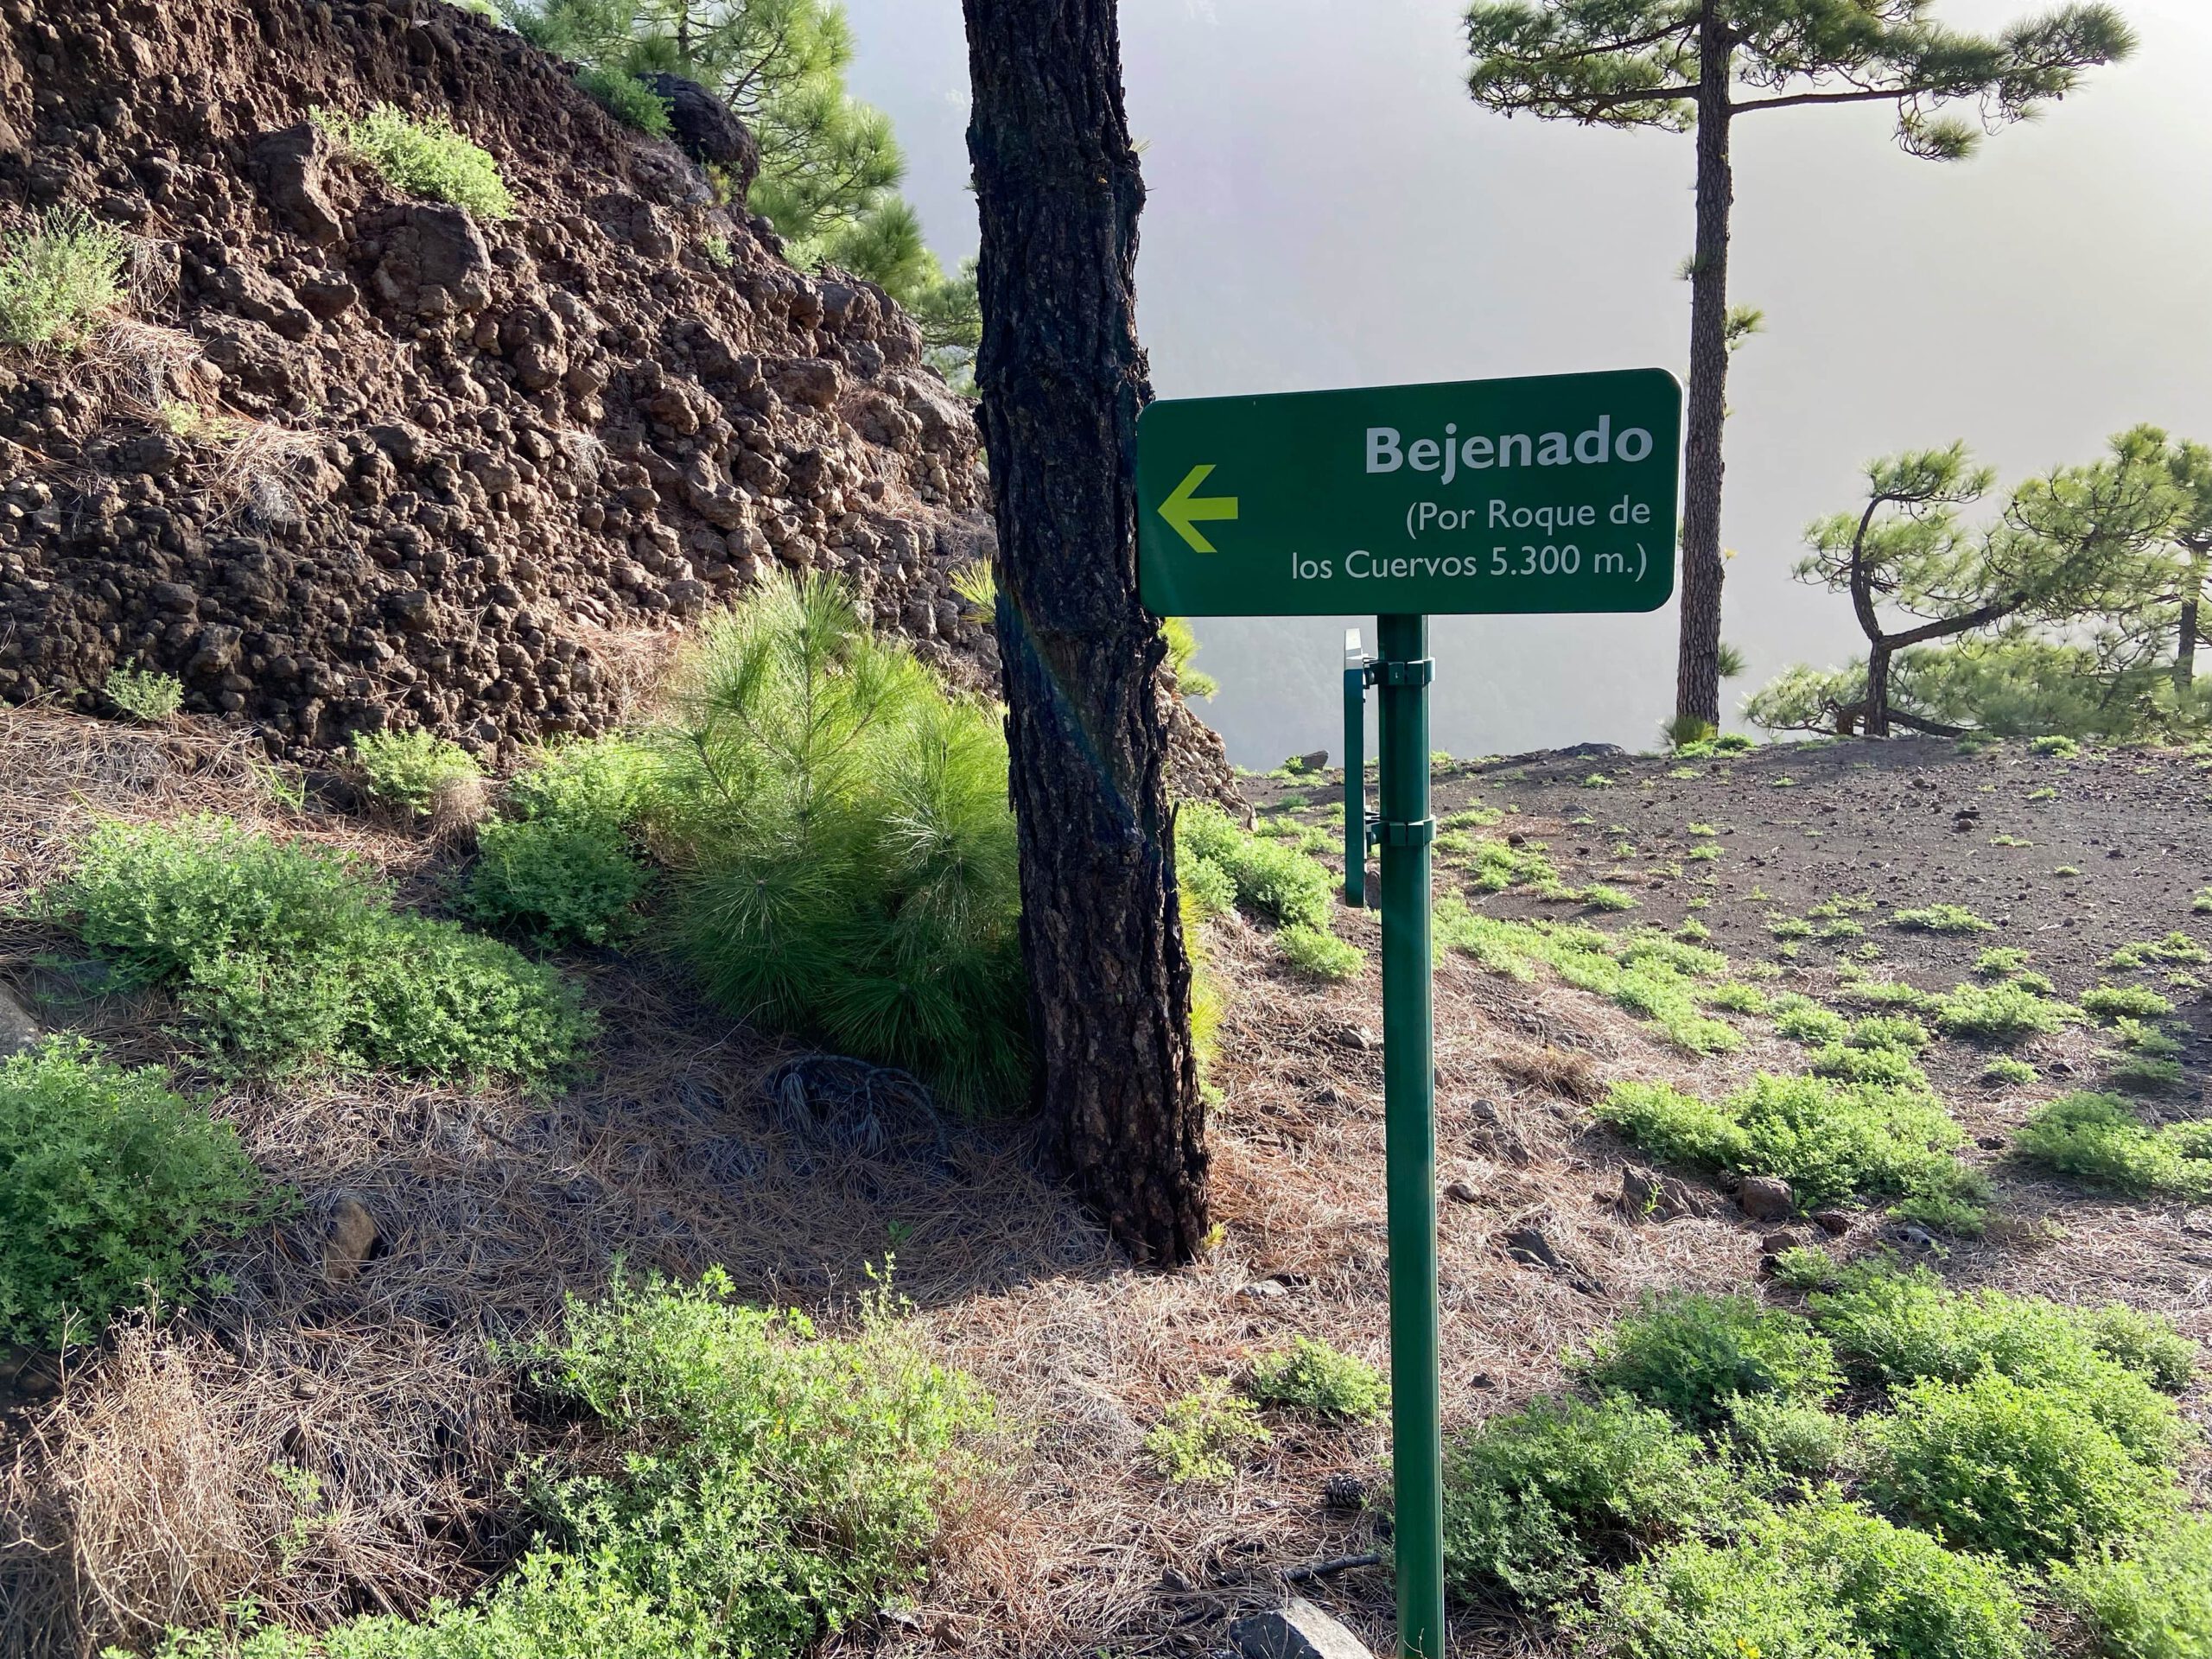 Start of the steep path to Pico Bejenado via Roque de los Cuervos